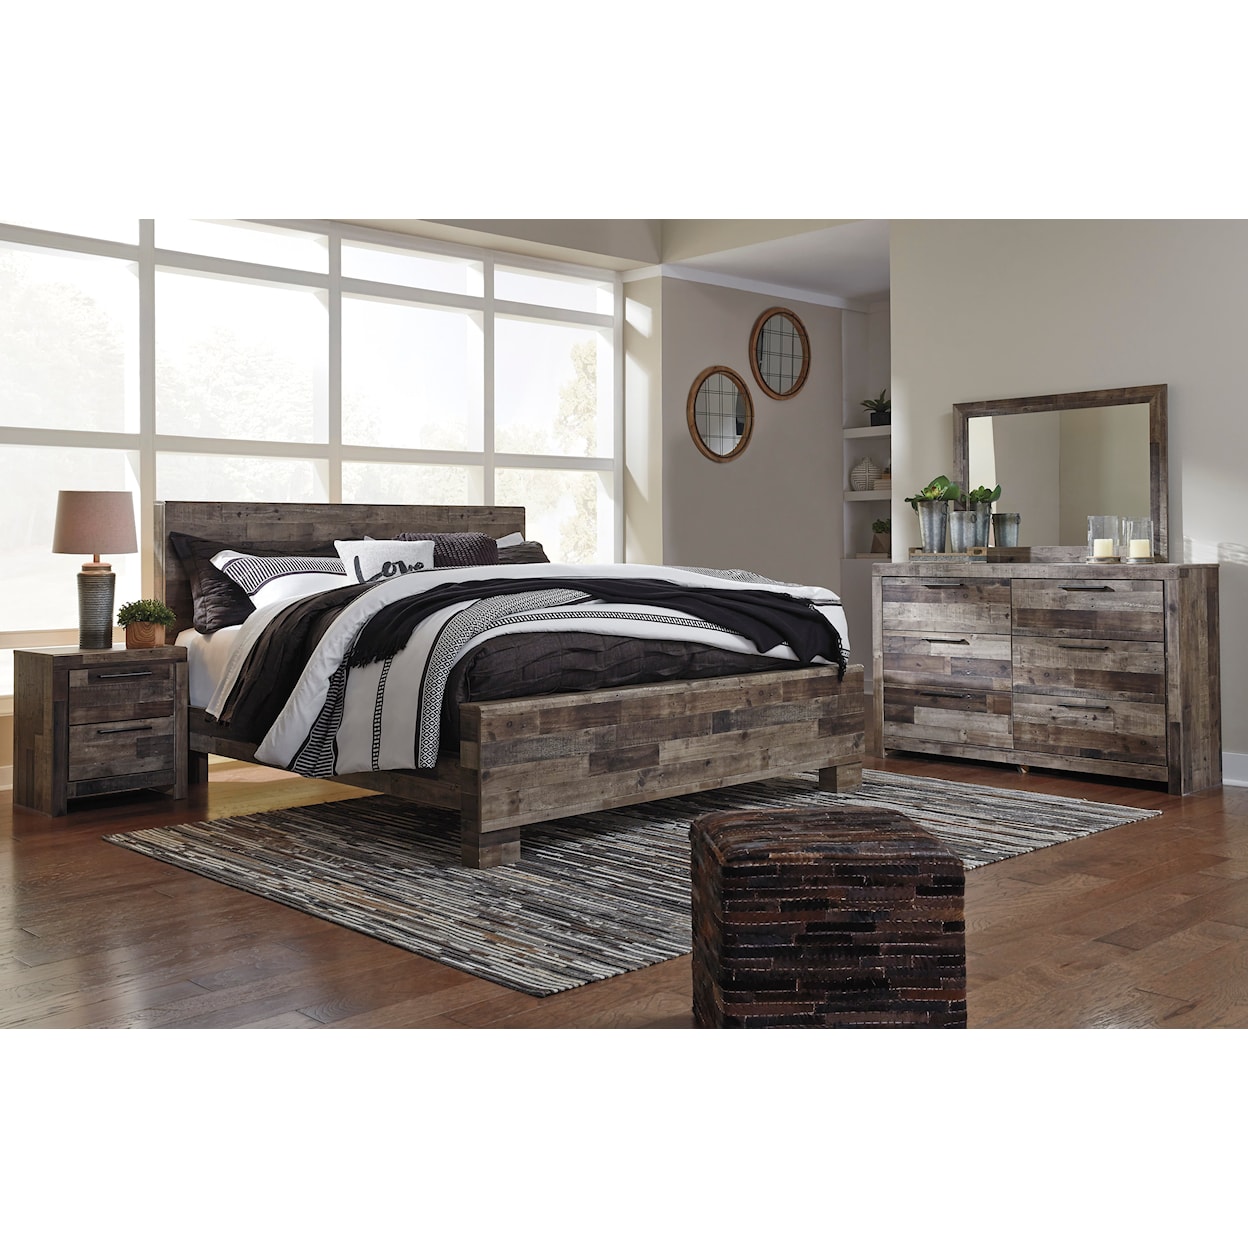 Ashley Furniture Benchcraft Derekson King Bedroom Set